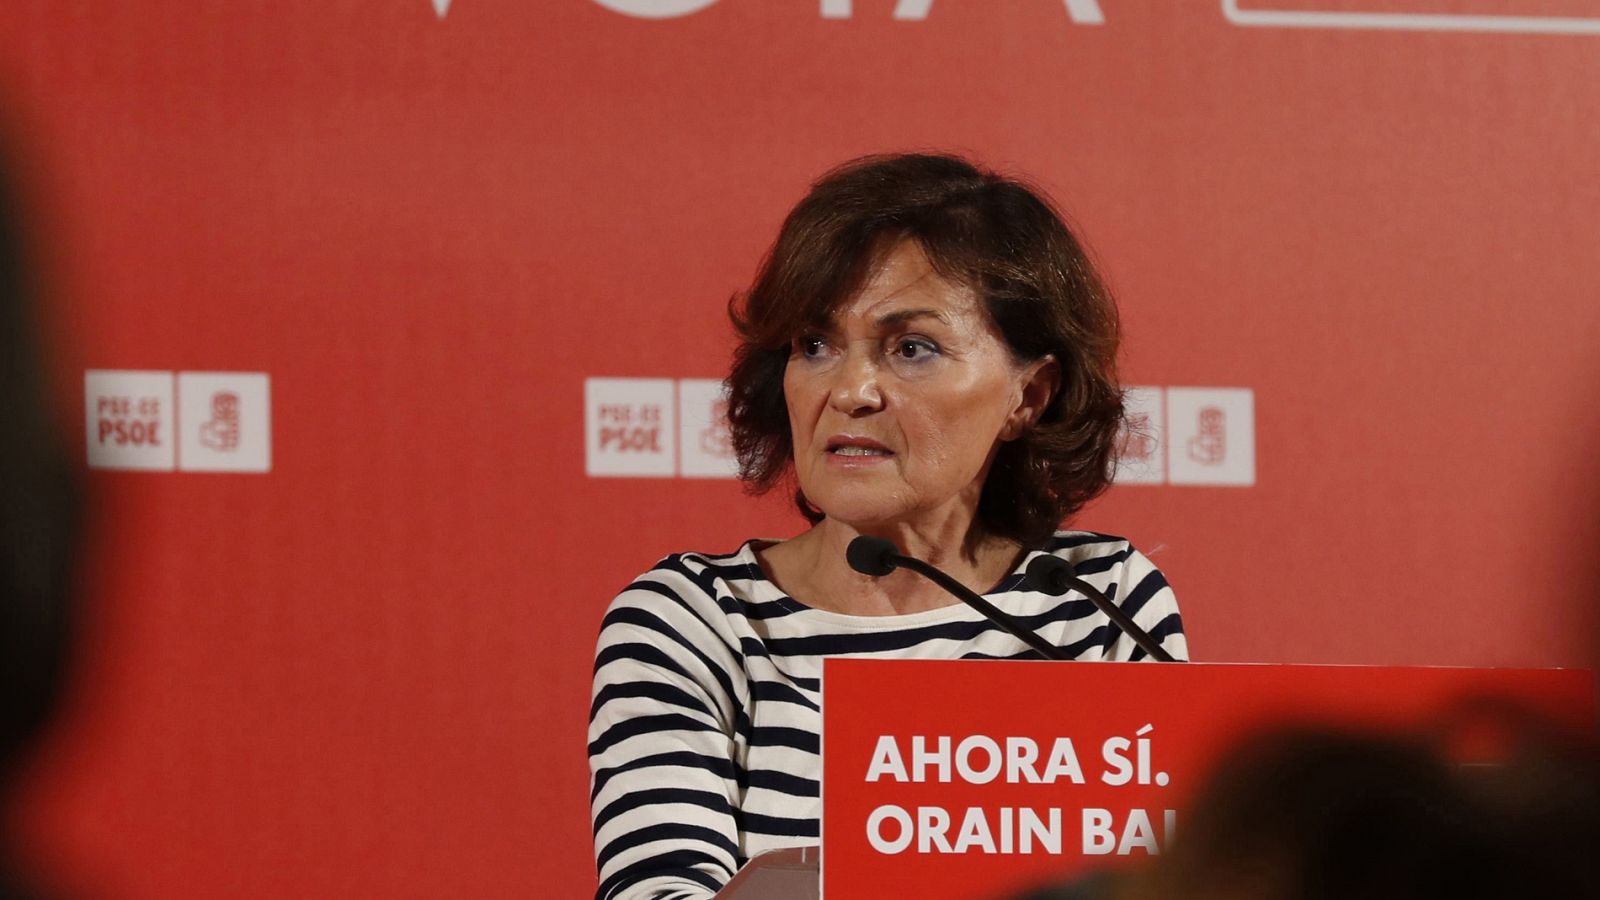 Elecciones generales: Calvo (PSOE): "Pedimos un cambio de criterio para todos, incluido nosotros" - RTVE.es